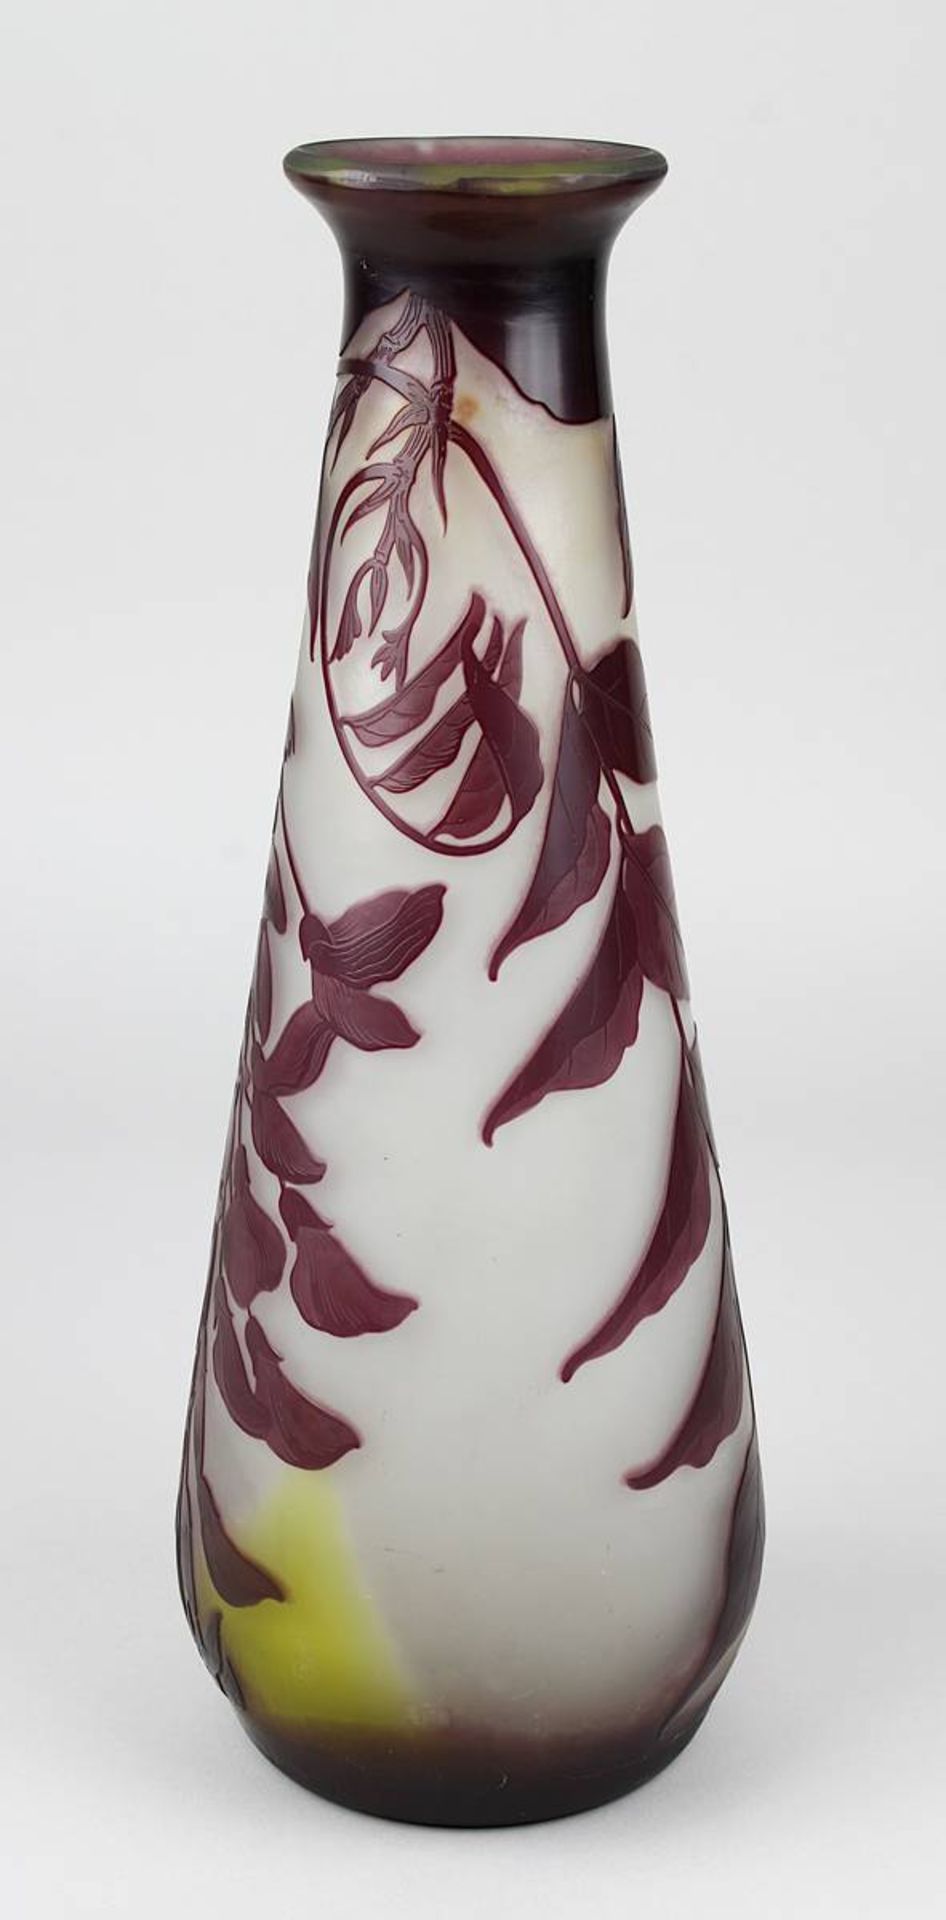 Gallé Jugendstil-Vase mit Glyciniendekor, Nancy 1906-14, keulenförmiger Klarglaskorpus innen mit - Image 2 of 4